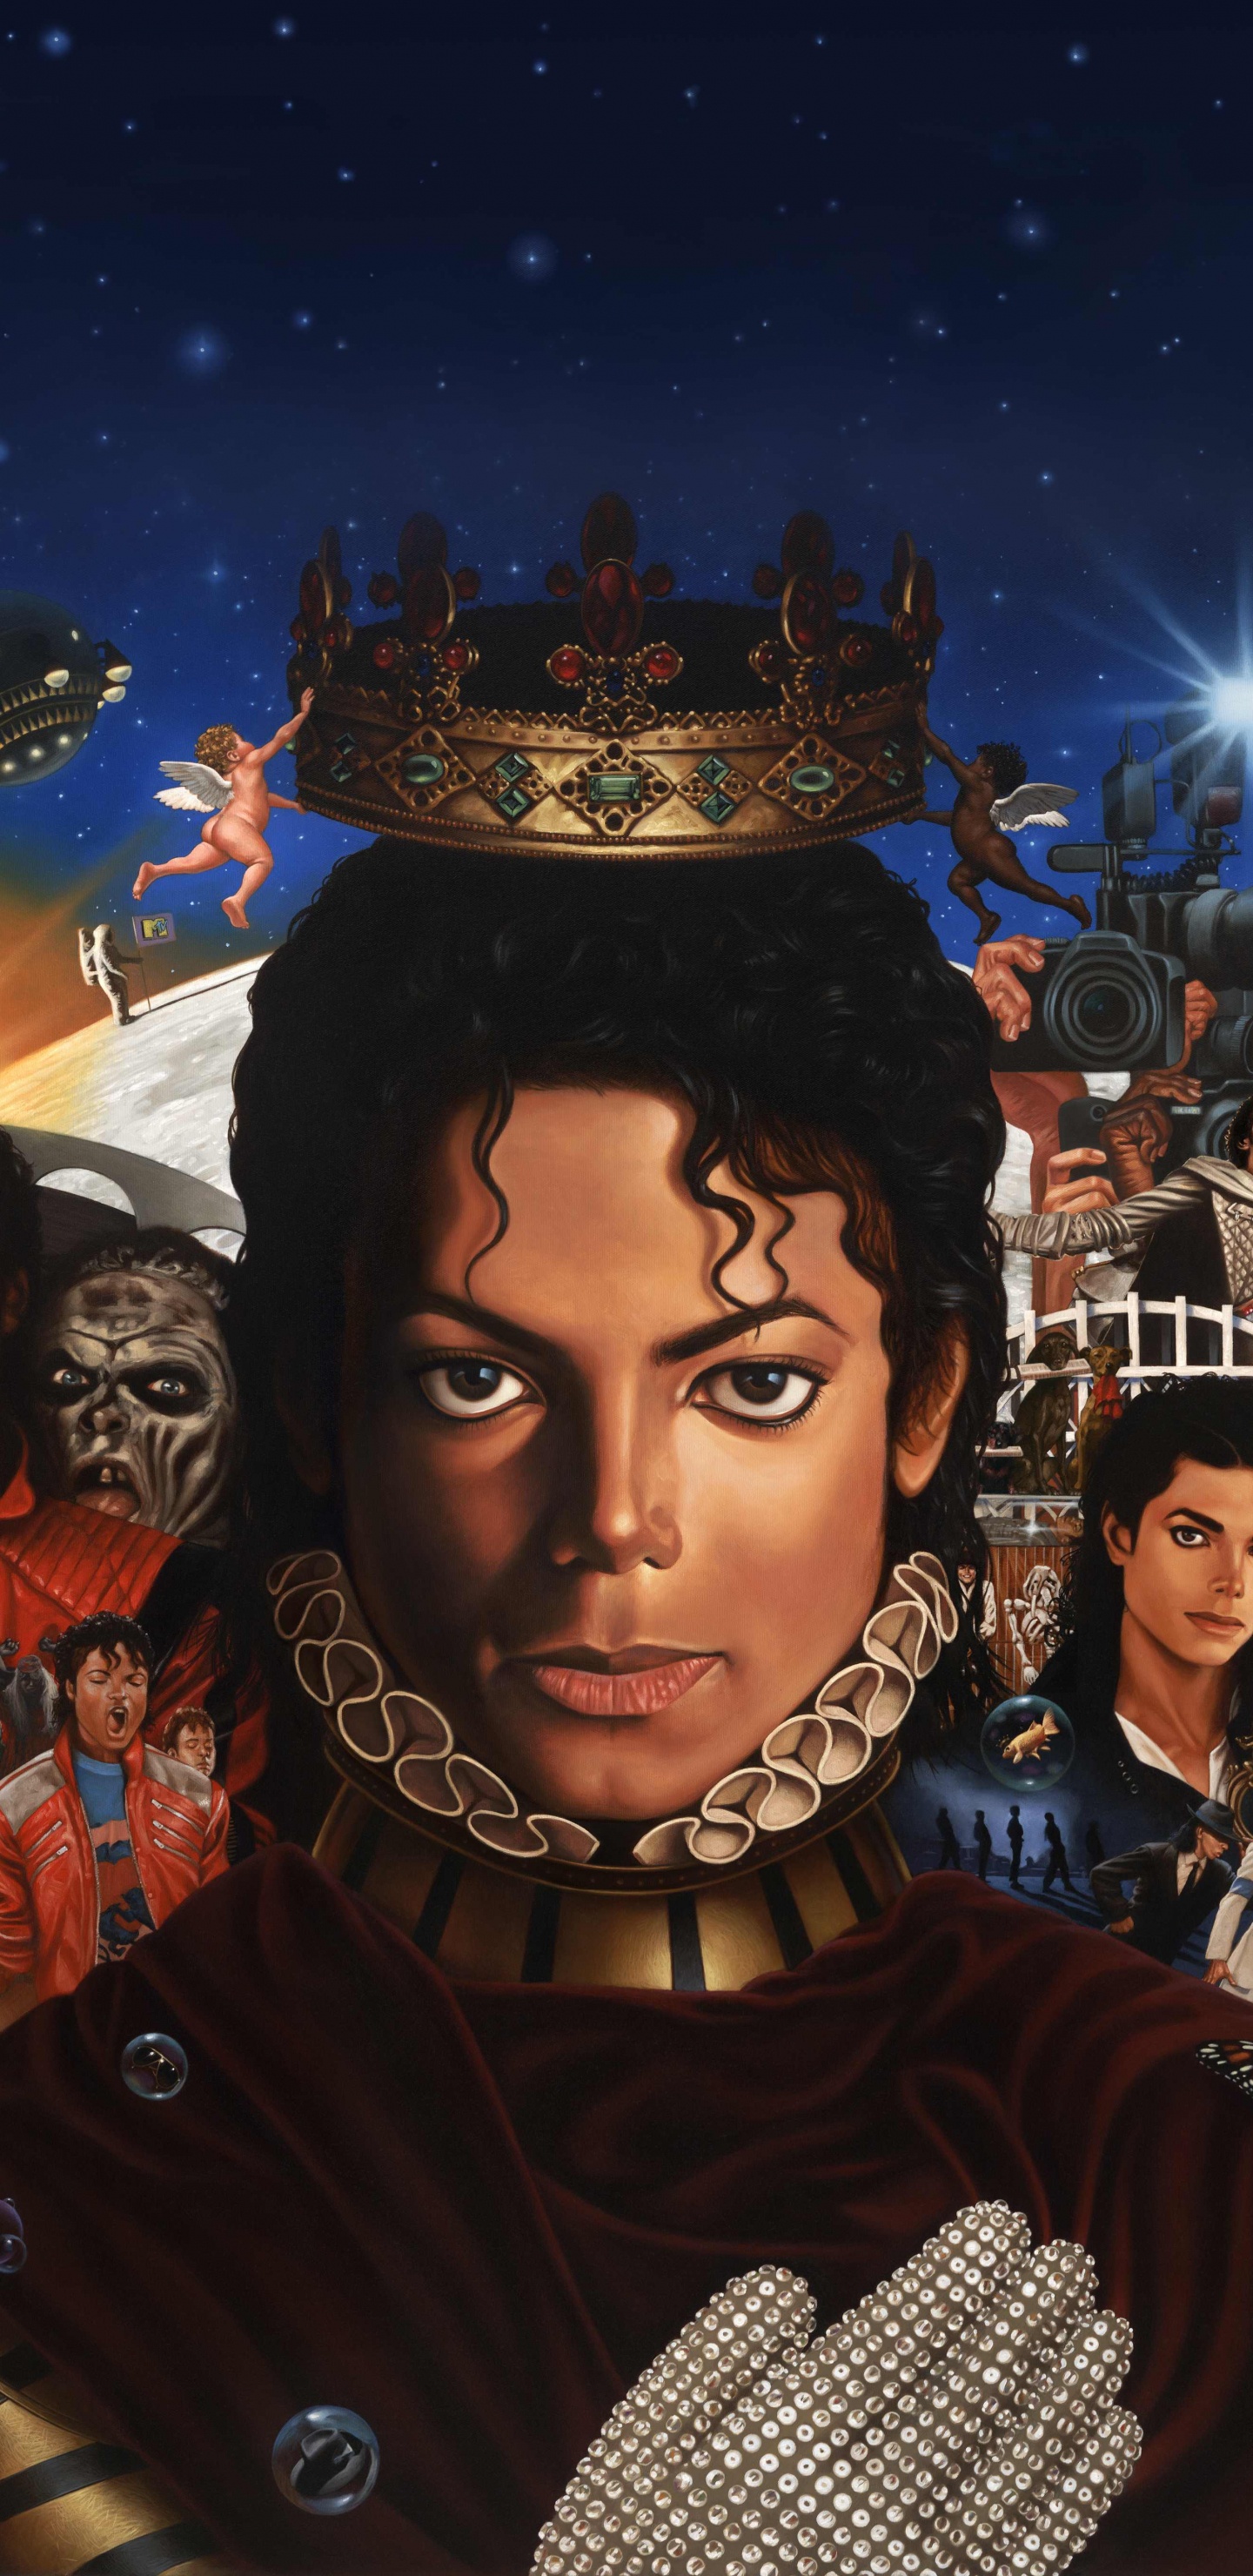 迈克尔*杰克逊, 迈克尔, 专辑, 艺术, 空间 壁纸 1440x2960 允许